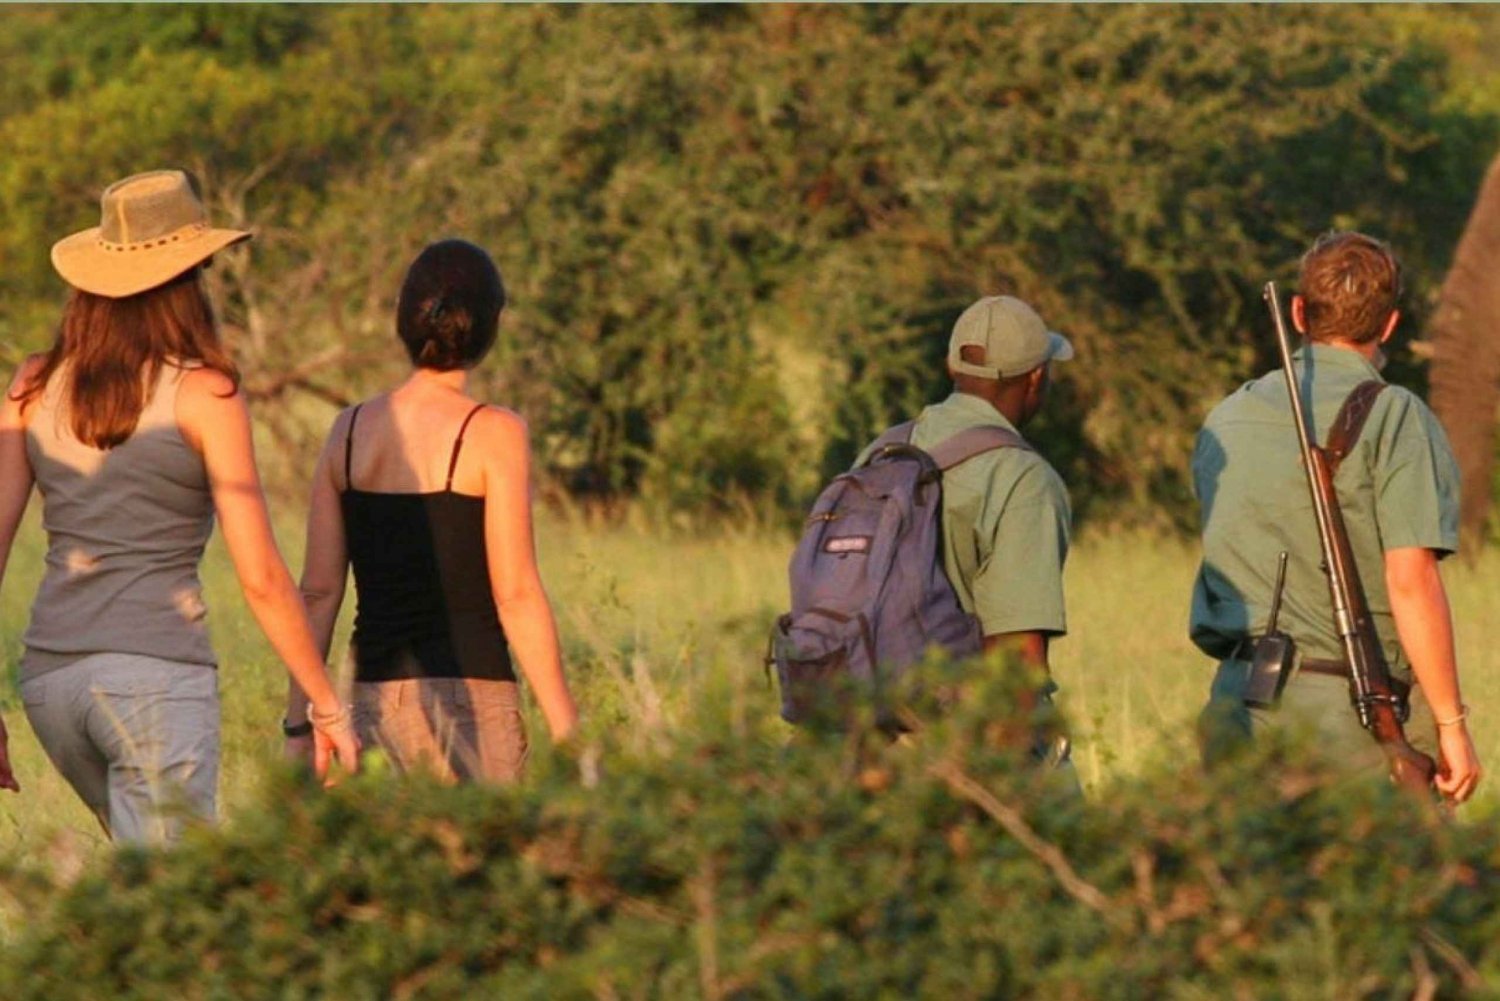 Excursão de 3 dias ao Parque Nacional Kruger saindo de Joanesburgo